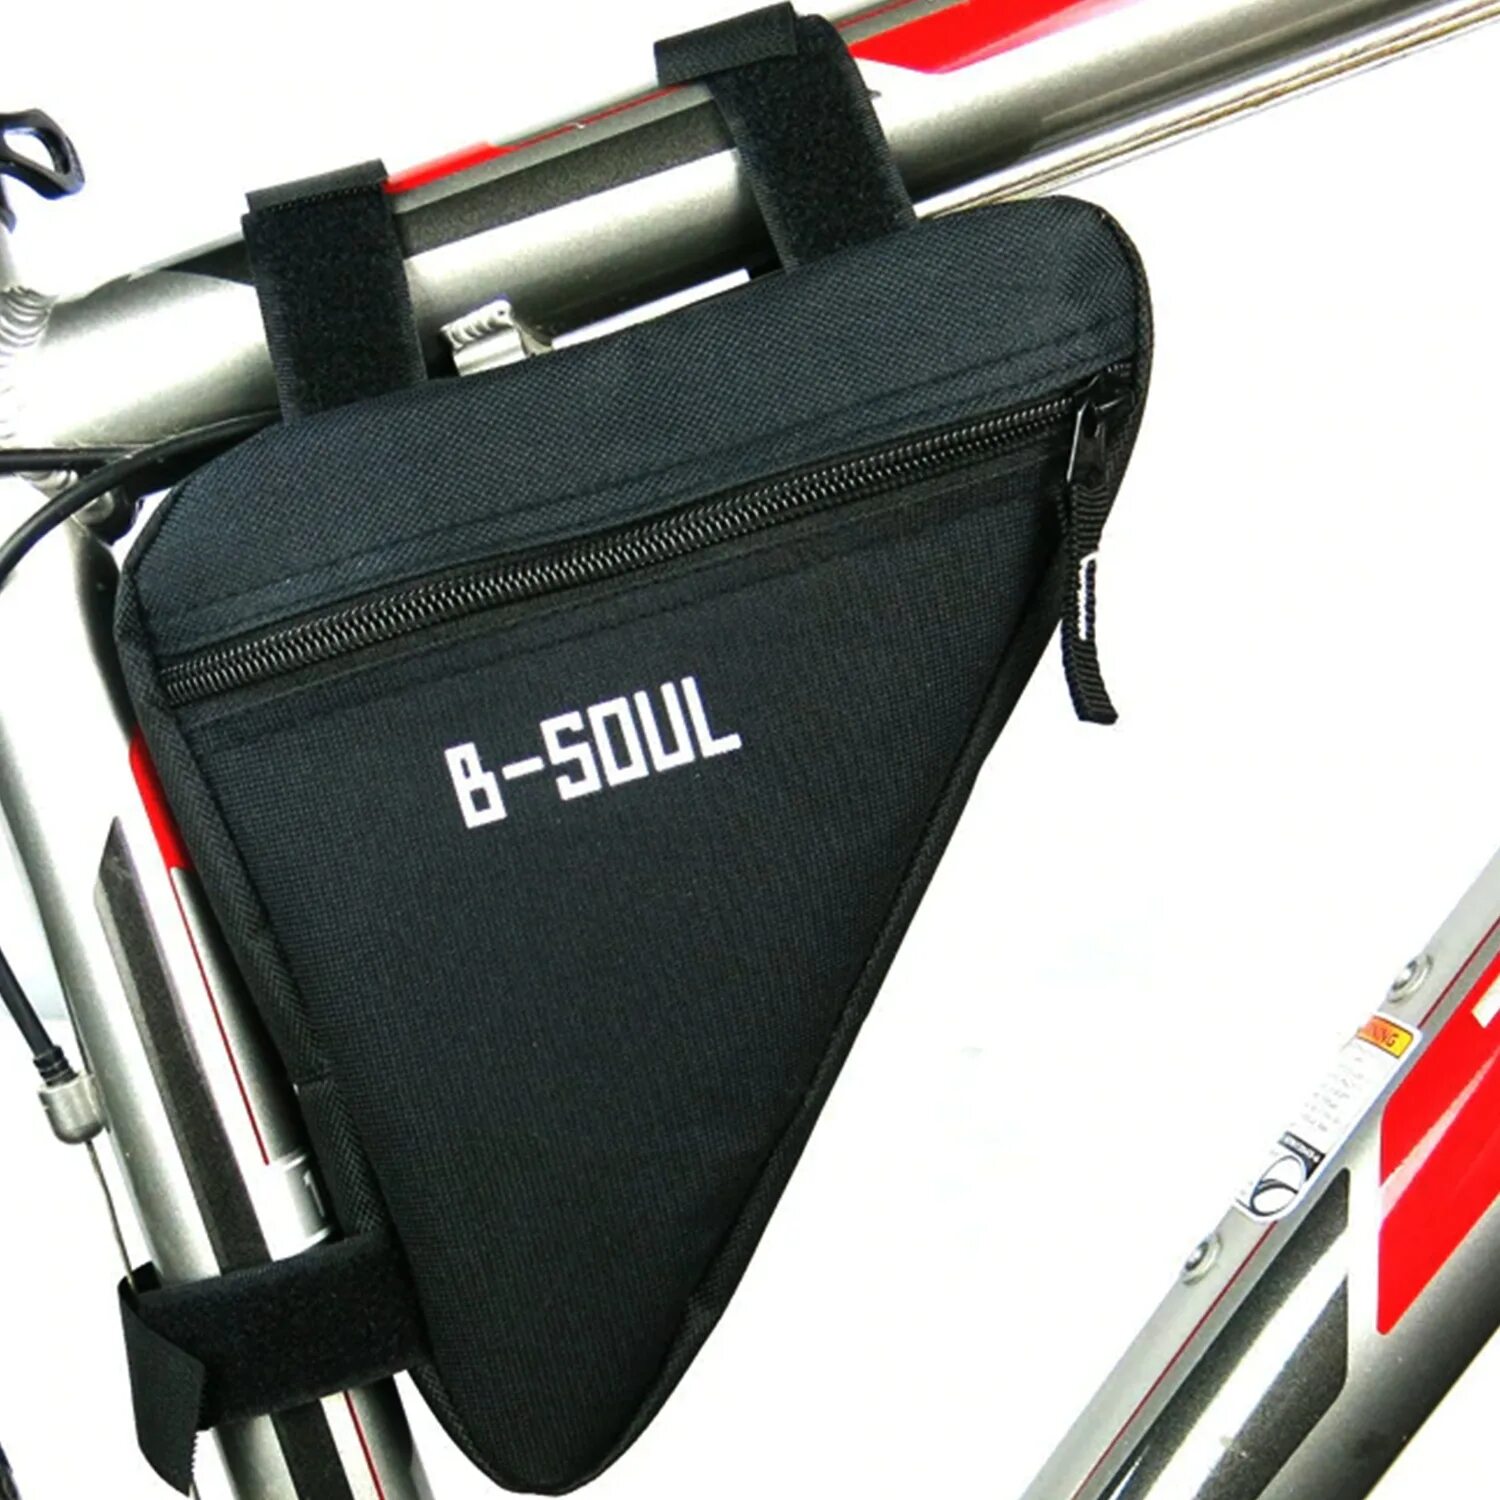 Купить сумку для велосипеда. B-Soul велосумка велосипедная сумка на раму. Велосумка стелс на раму. B-Soul велосумка на багажник. Forward Sporting сумка под раму.